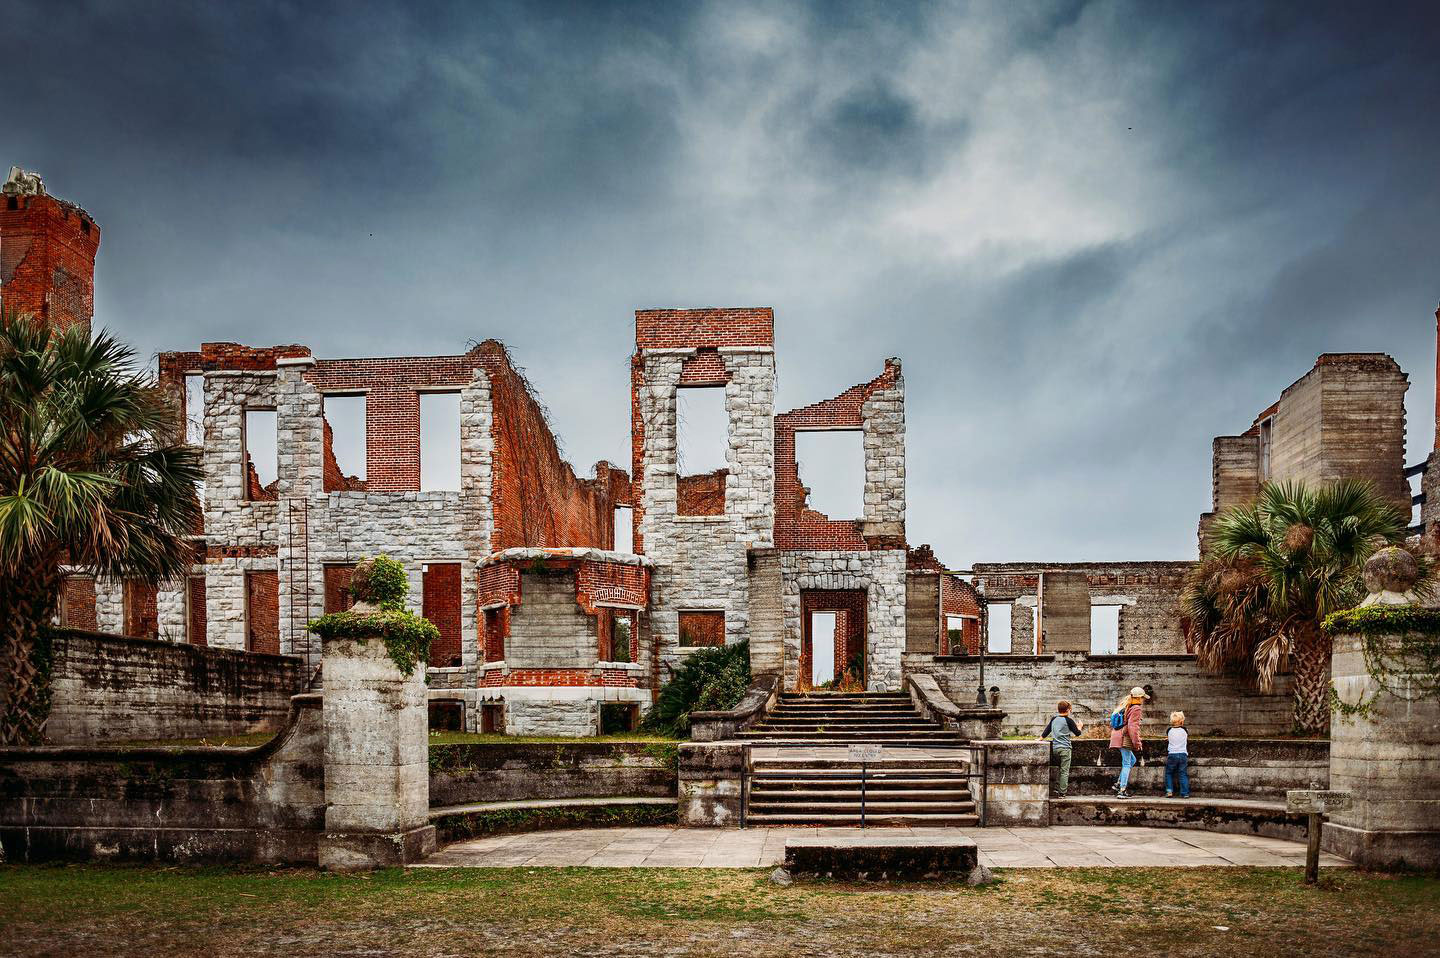 乔治亚州坎伯兰岛上的邓杰内斯废墟。图片由@september.dawn